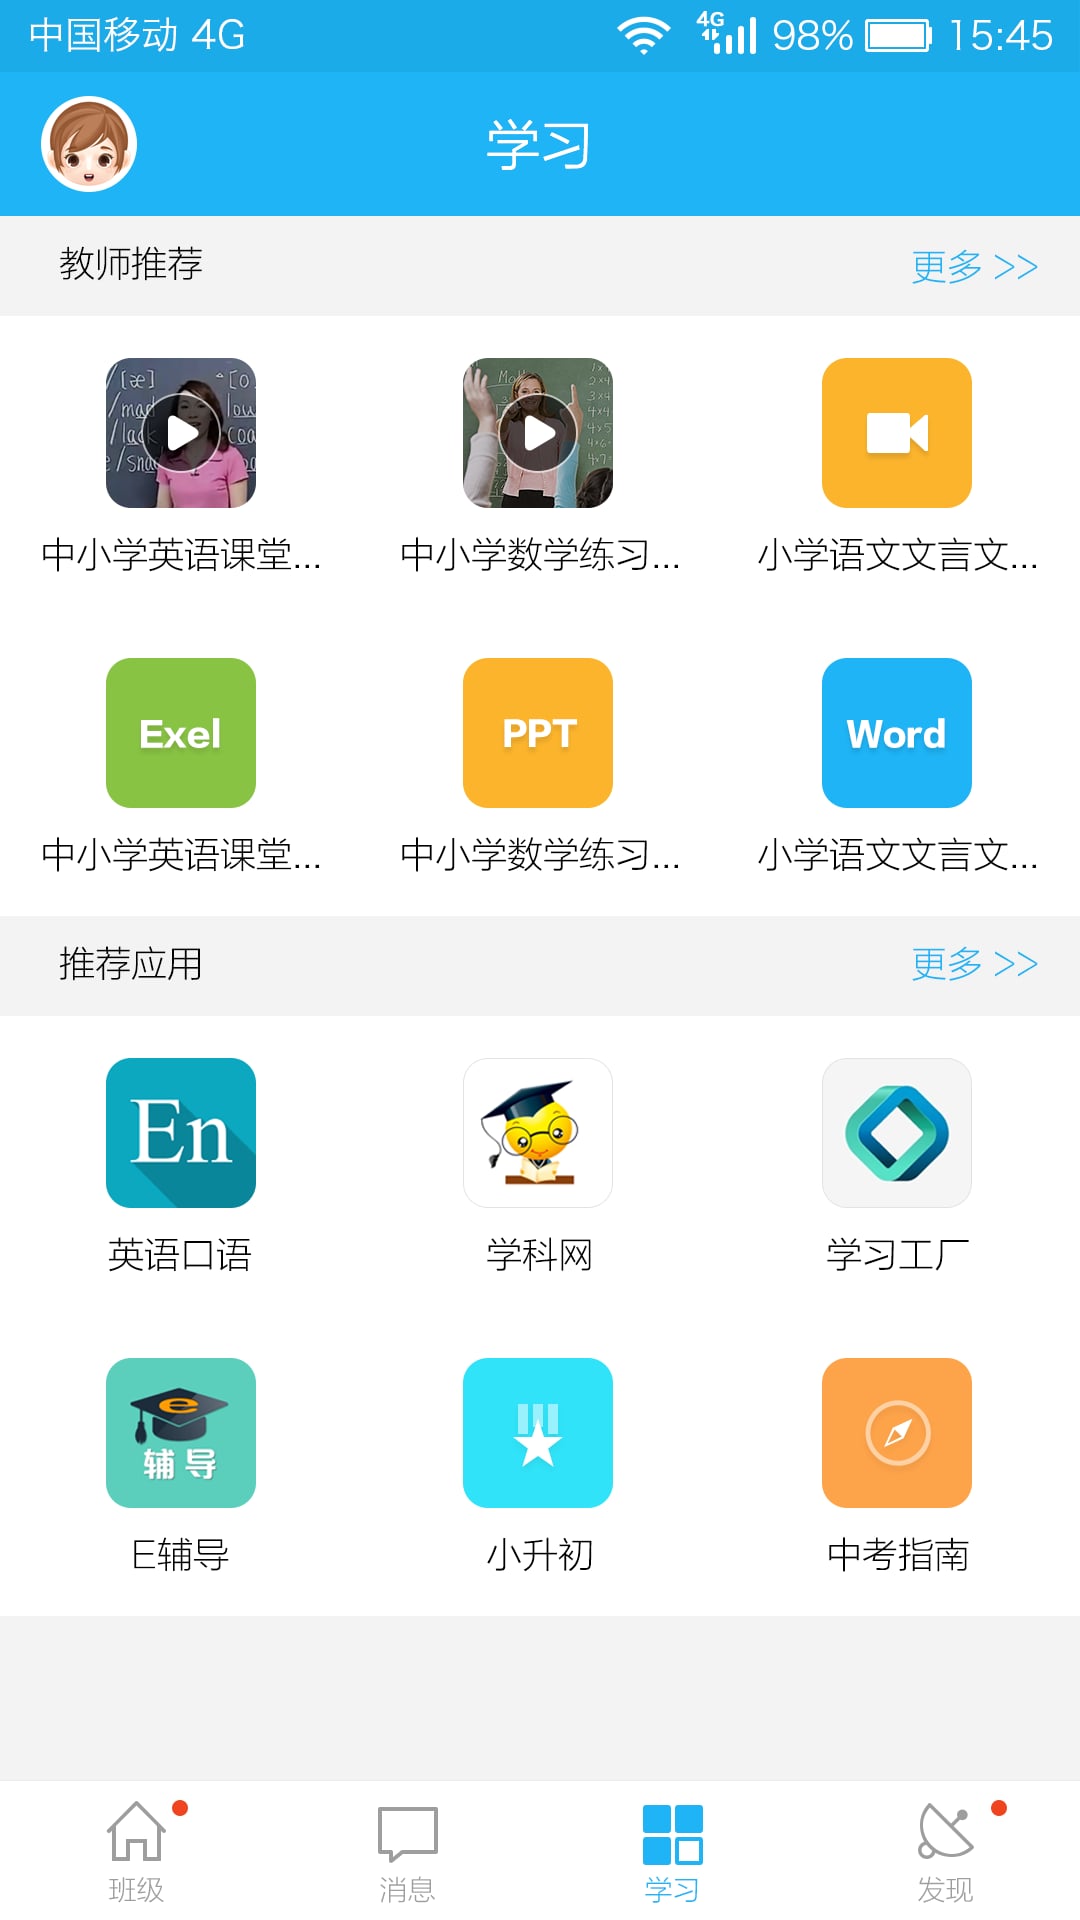 江苏校讯通客户端 v5.2.2 官方安卓版 2